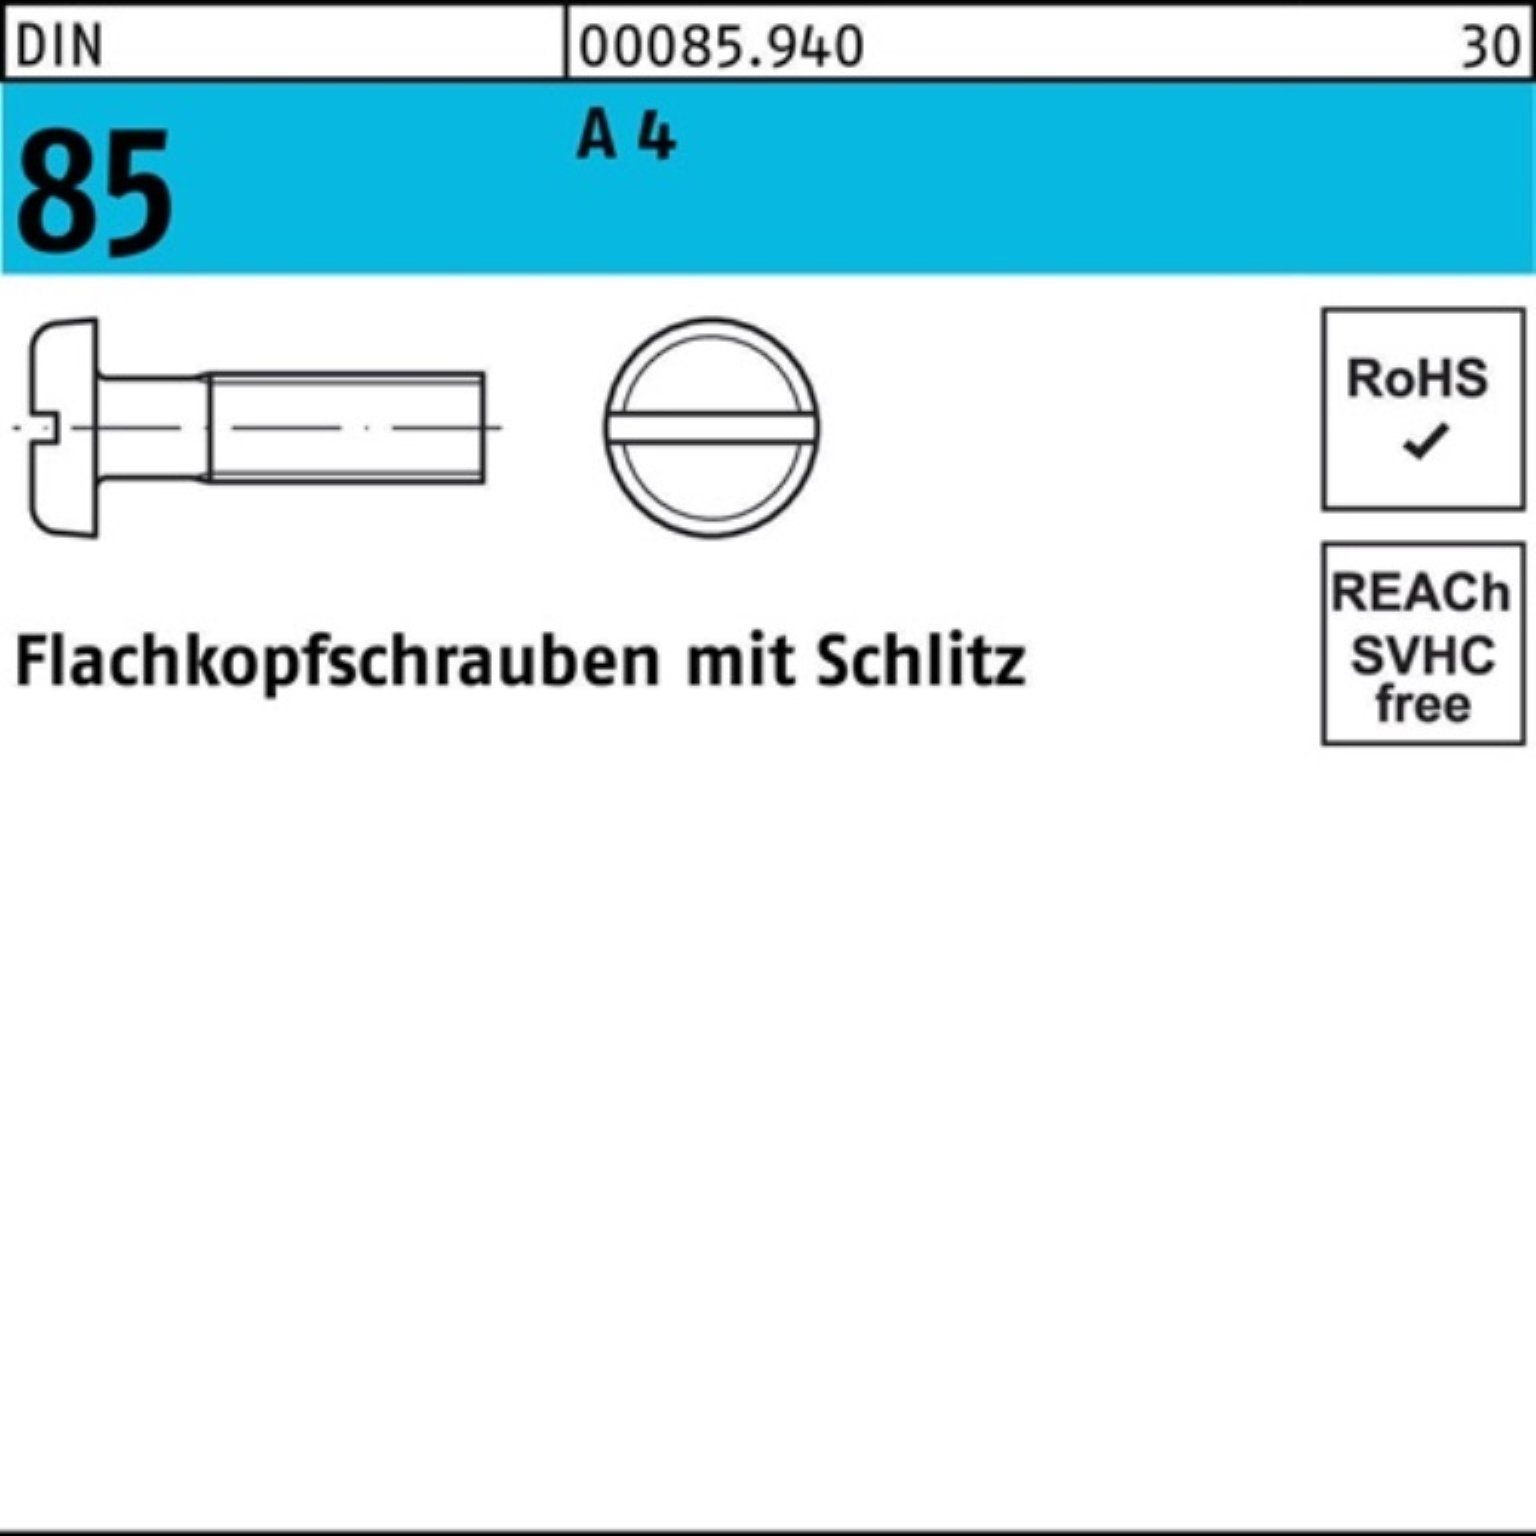 Pack A Flachkopfschraube Schlitz 4 DIN 1000er Reyher 85/ISO 1580 Schraube 1000 5 M2,5x